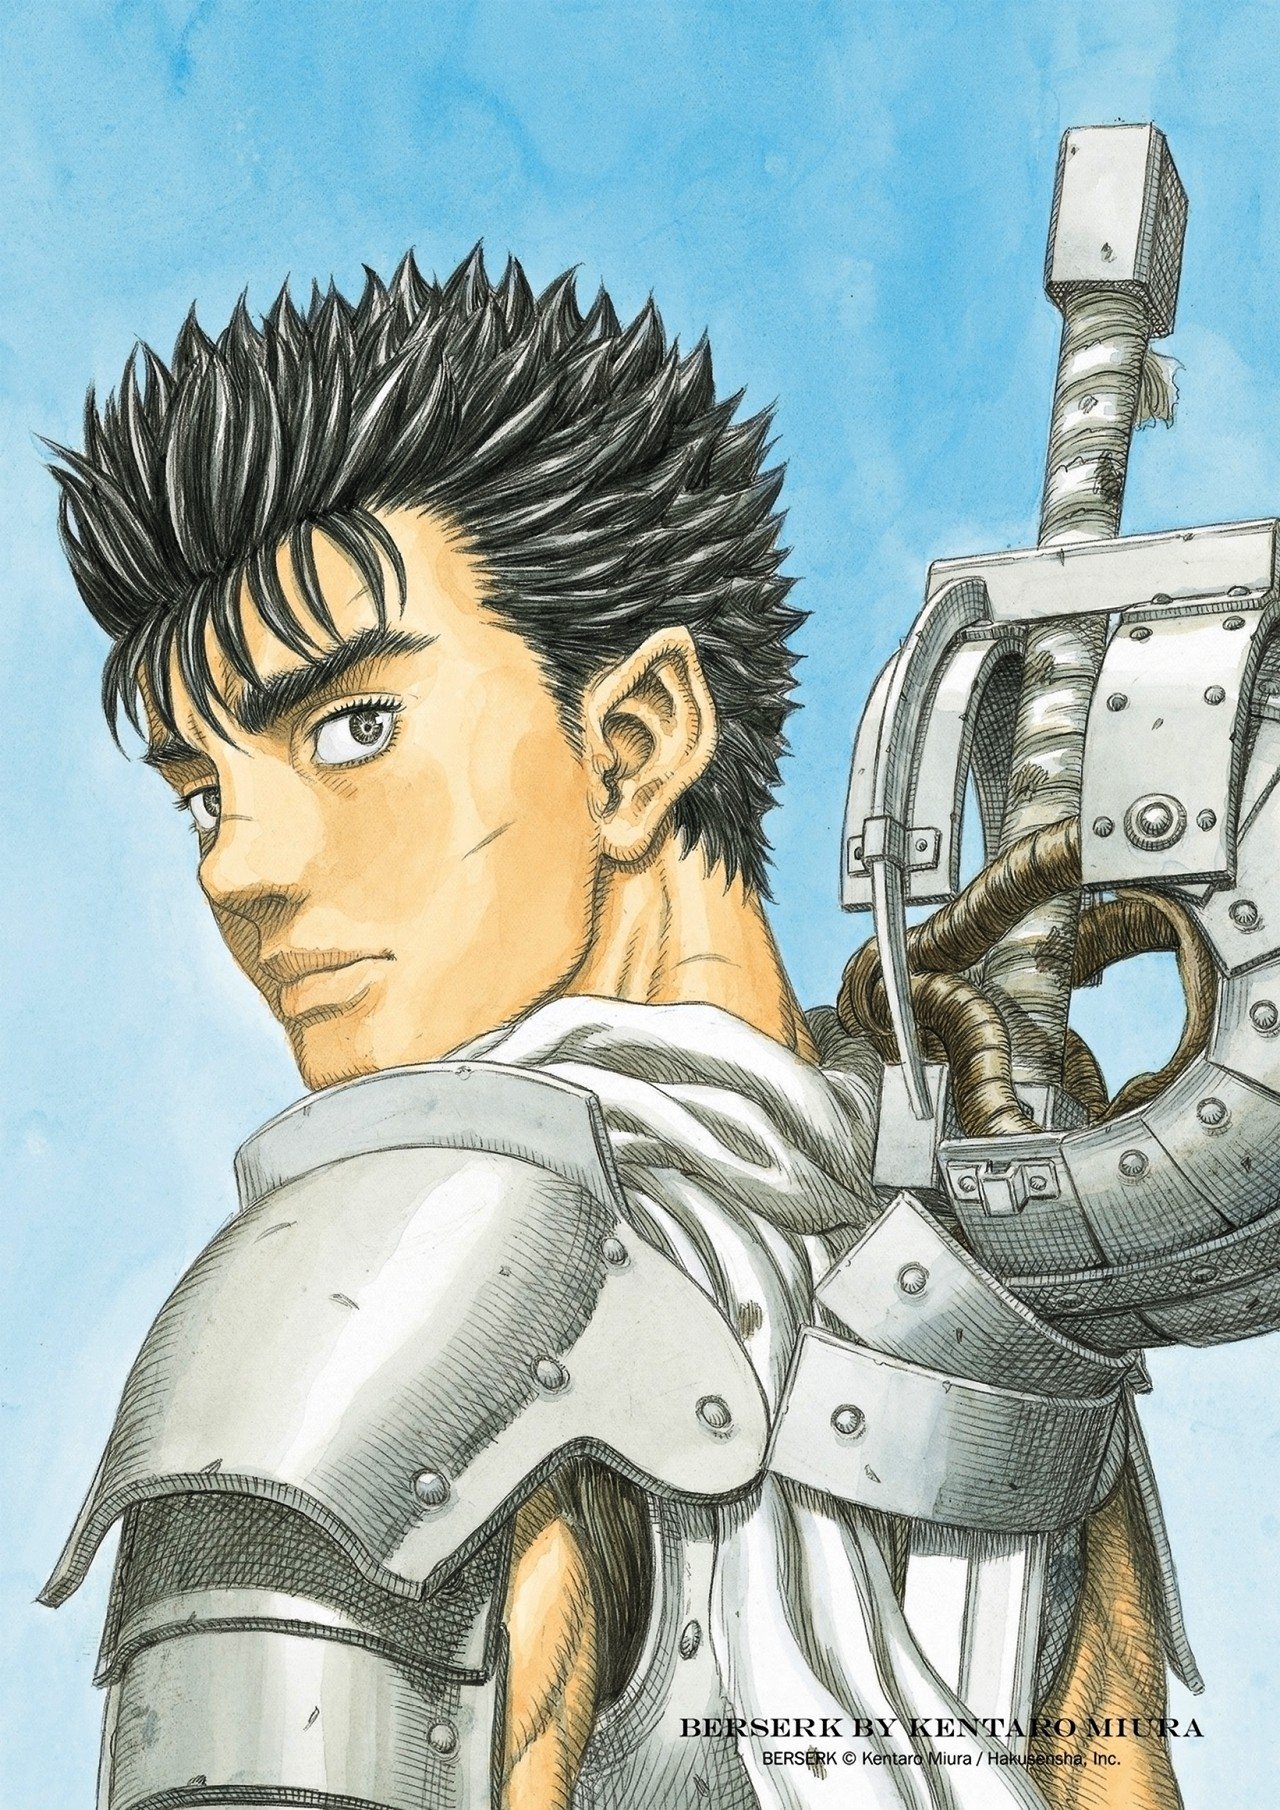 El manga "Berserk" será reanudado tras el fallecimiento de Kentarou Miura